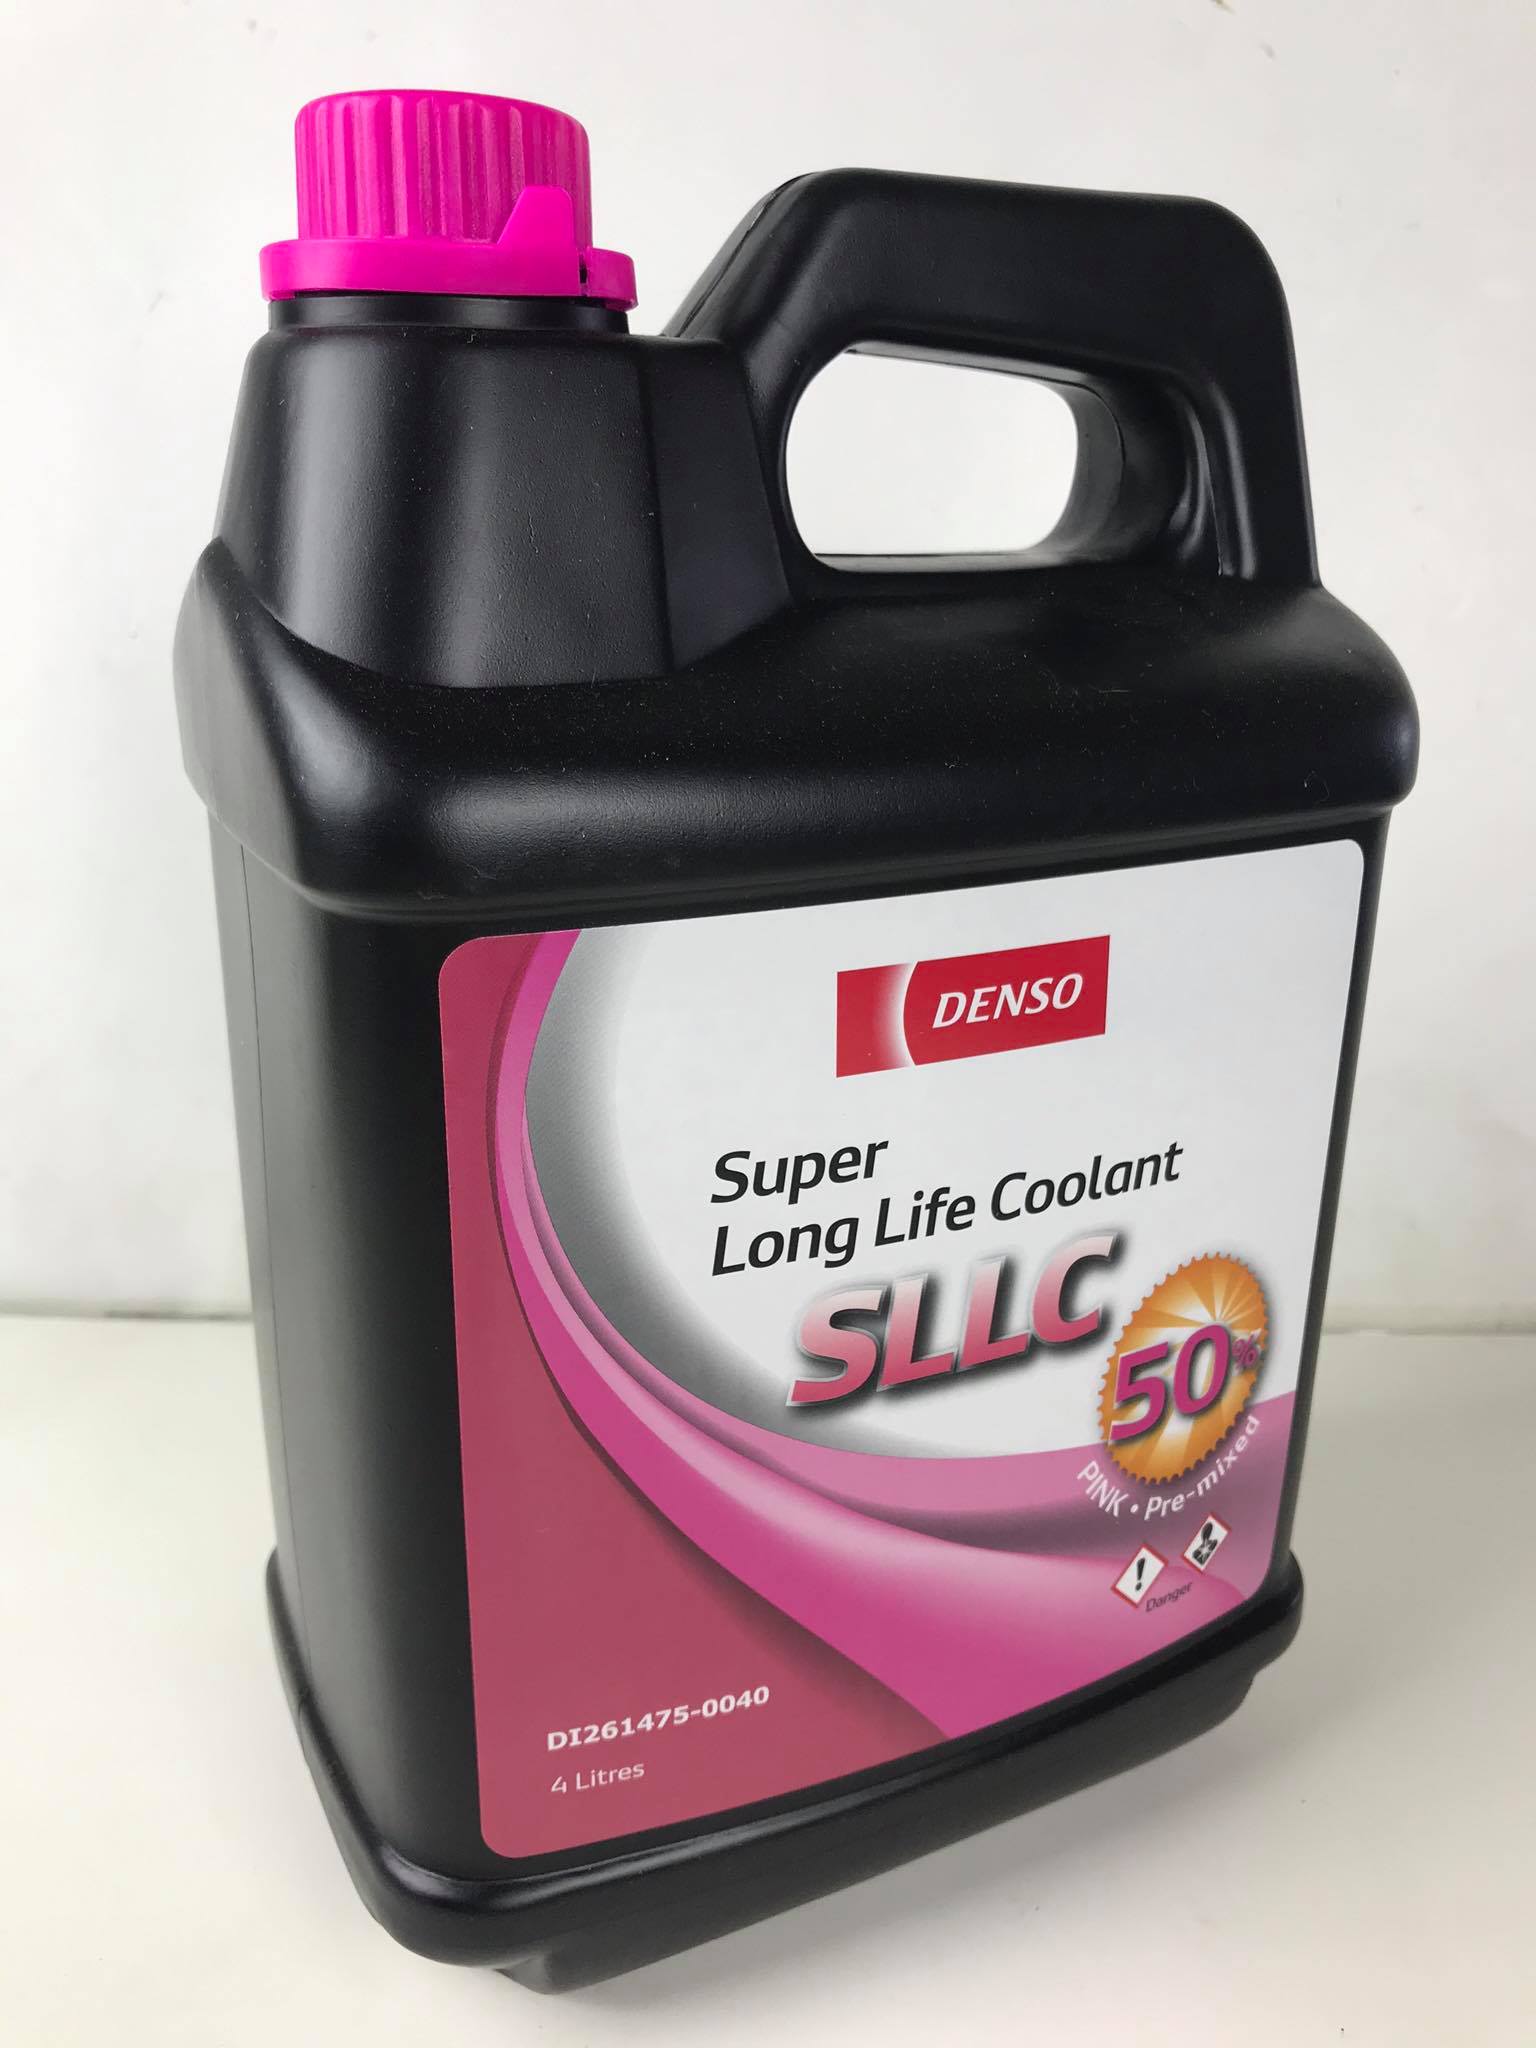 น้ำยา หม้อน้ำ สีชมพู  ขนาด 4 ลิตร CL0001 สำหรับรถ โตโยต้า DENSO แท้ รหัส DI261475-0040  Super long life coolant (SLLC)  Toyota